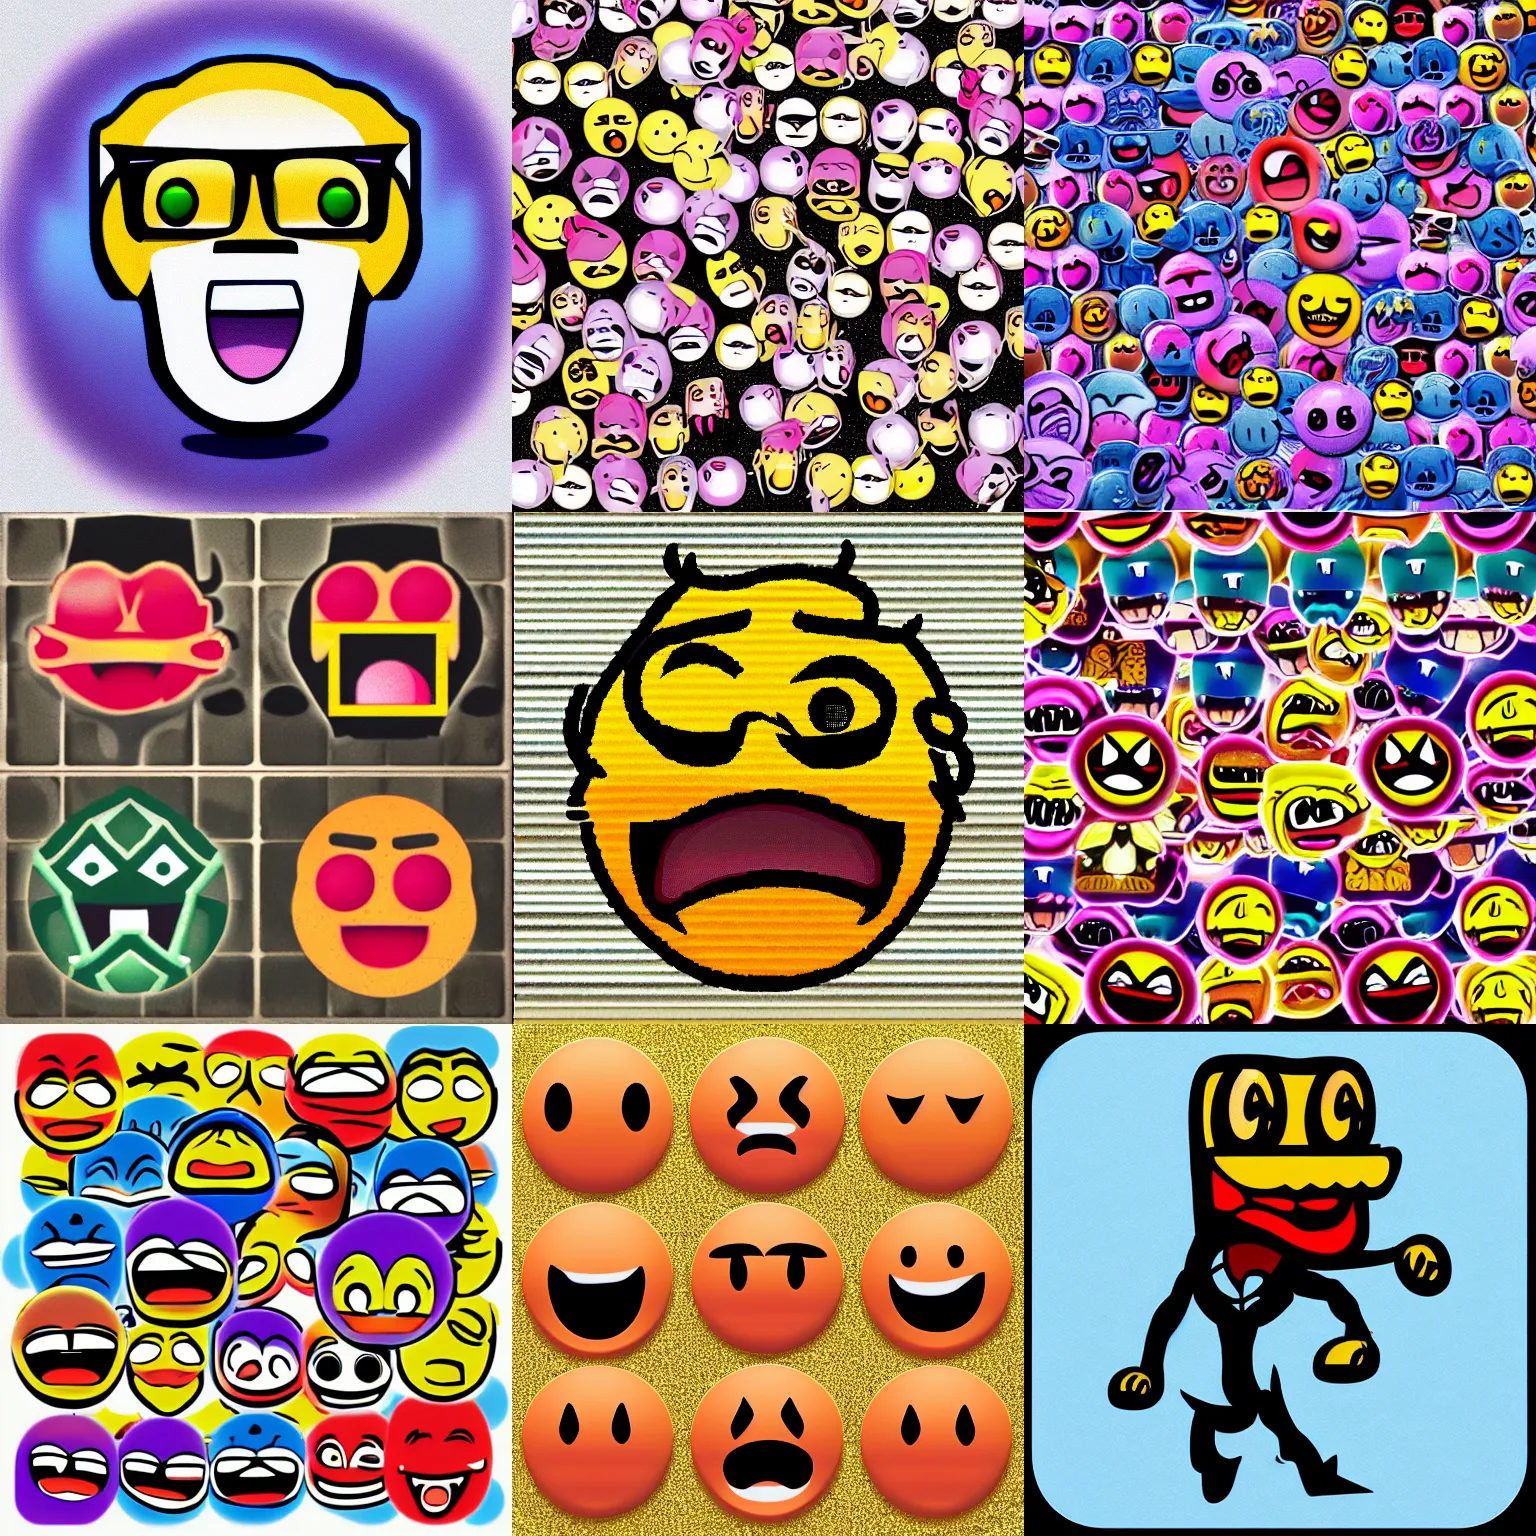 Prompt: rage emoji emoji